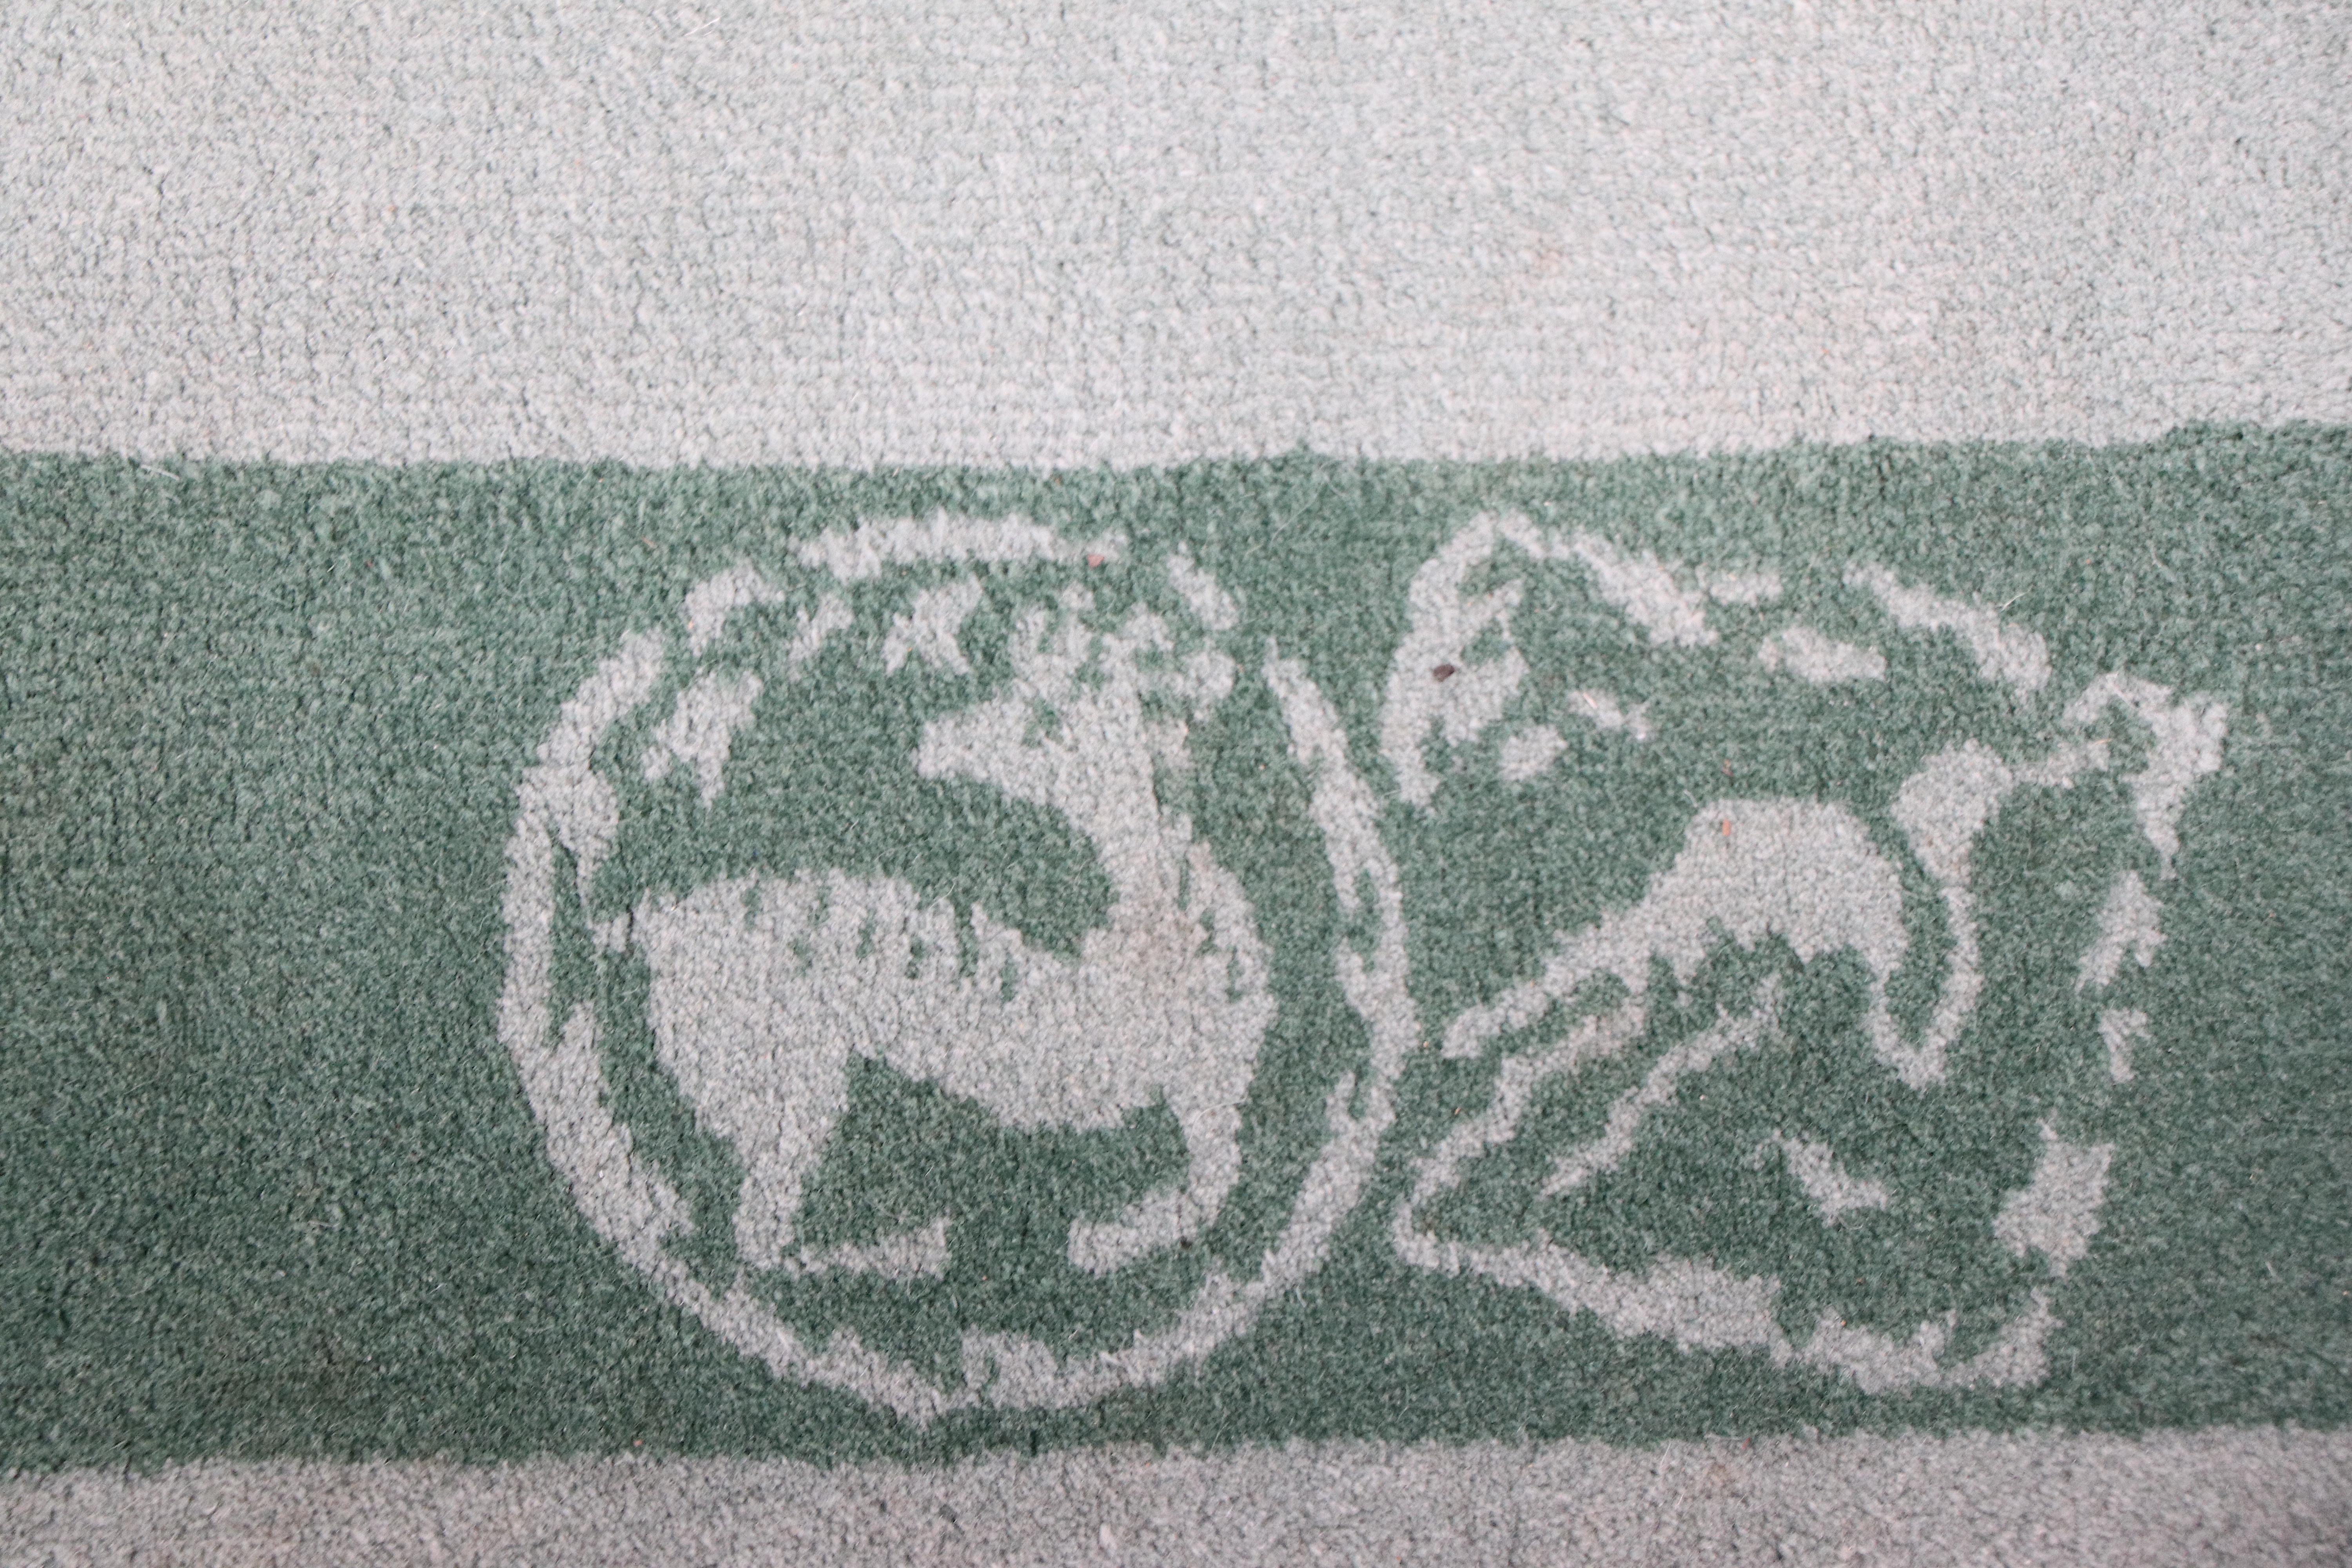 Joli tapis chinois en laine à poils épais, de couleur verte à deux tons, dans le style de Nichols. Ce tapis est en très bon état, original, propre et prêt à être utilisé. Nous pensons qu'il s'agit d'un tapis chinois des années 1930 à 1970, mais nous